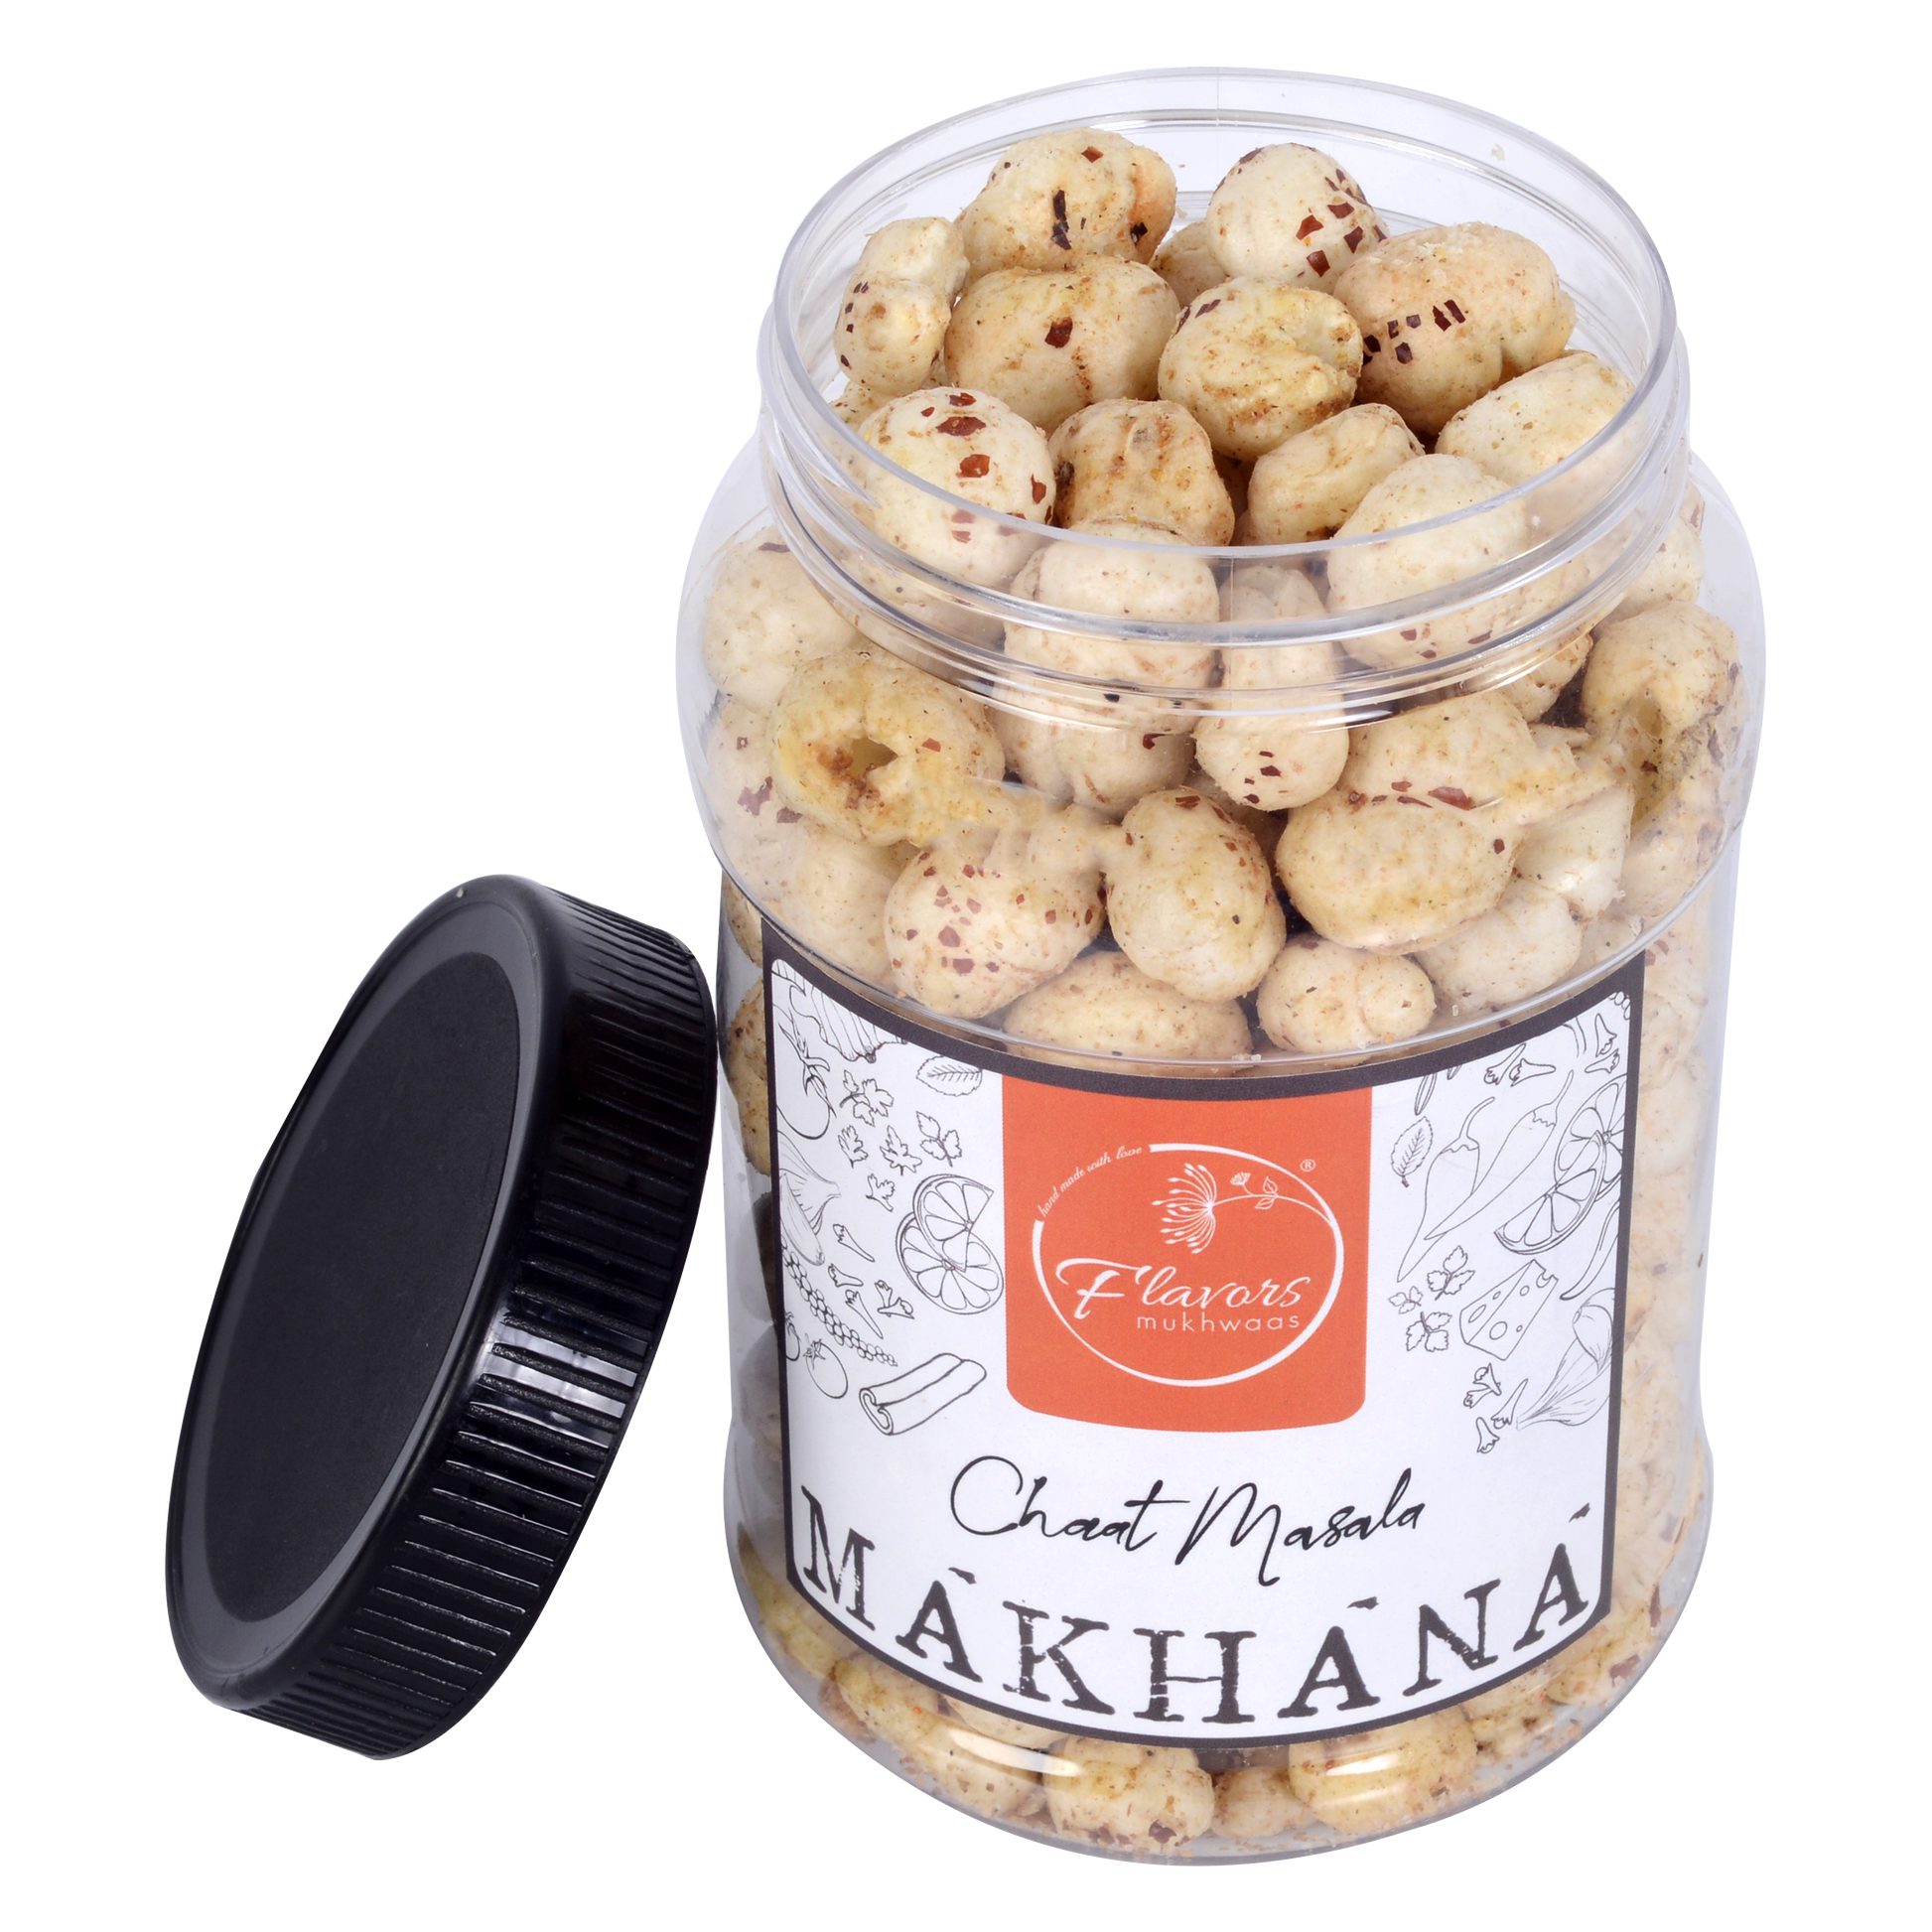 Chaat Masala Makhana (Fox Nuts) flavors mukhwaas